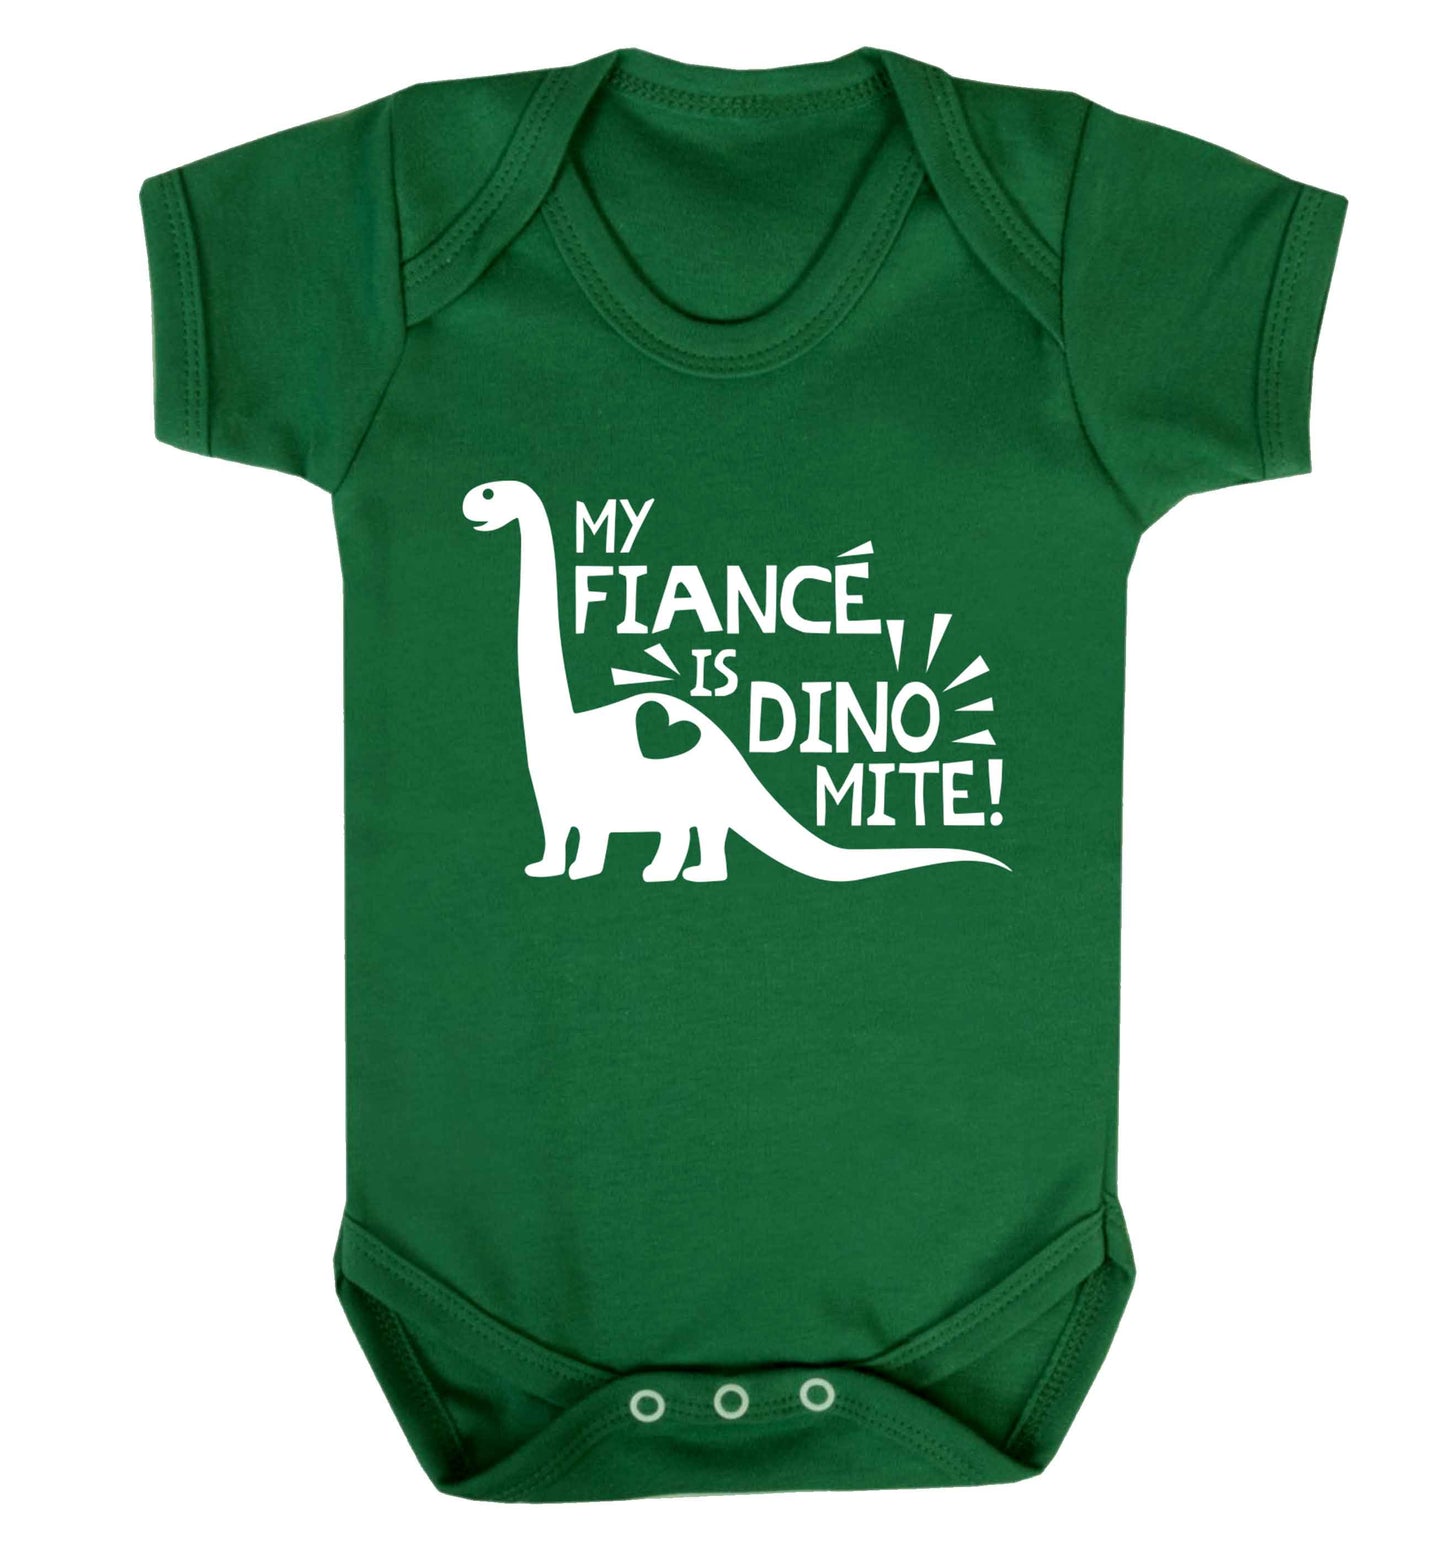 My fiance is dinomite! Baby Vest green 18-24 months